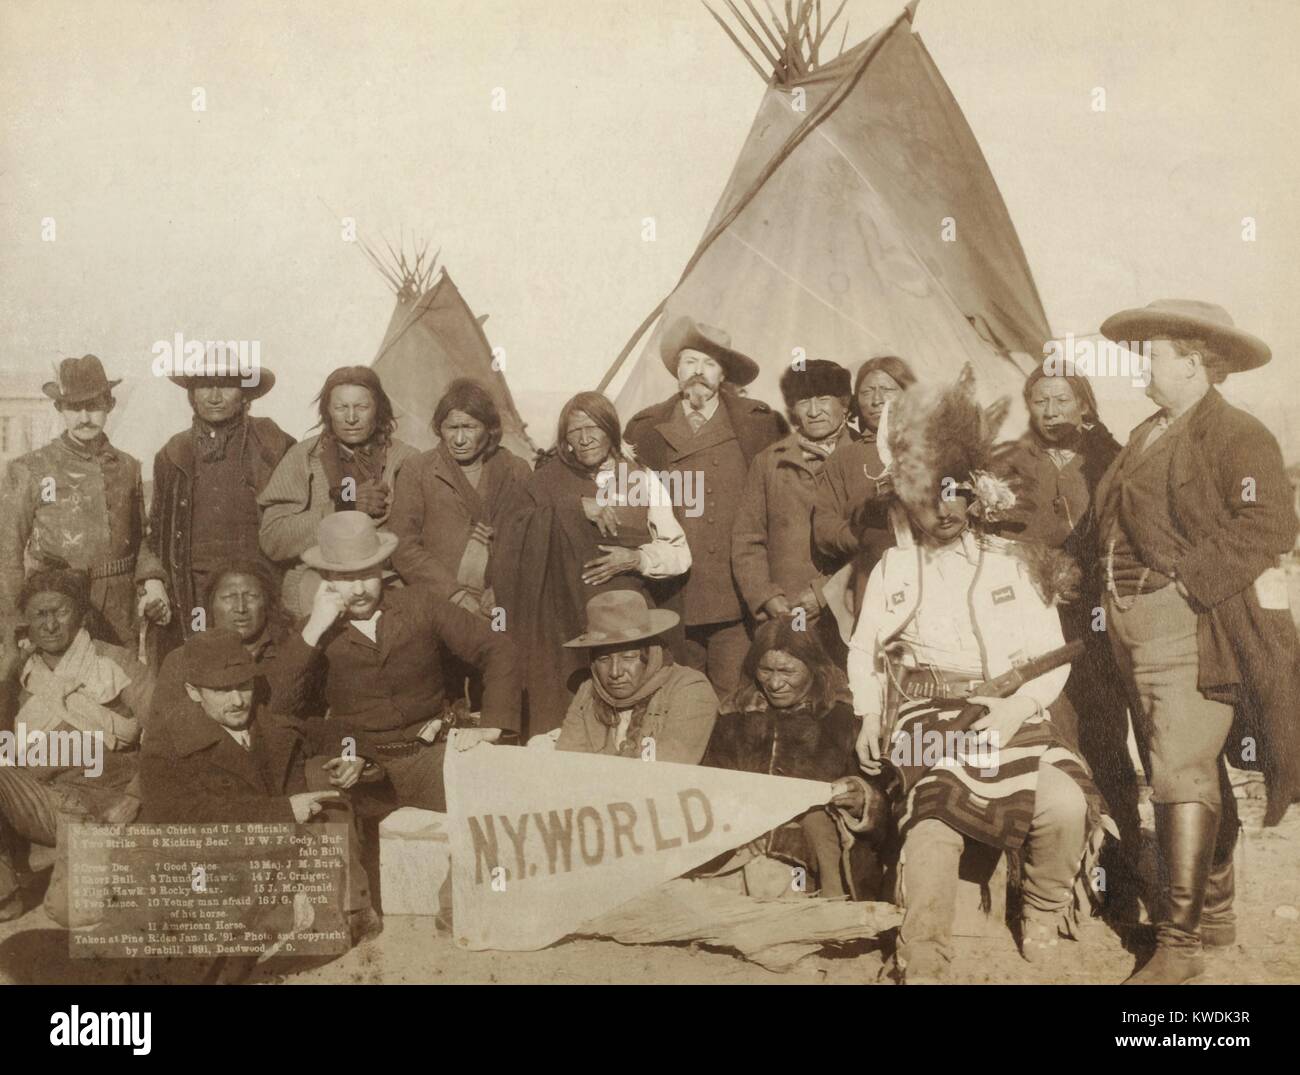 Euroamericana Lakota e gli uomini a Pine Ridge Prenotazione on gennaio 16, 1891. Essi sono stati il tentativo di ristabilire la pace dopo la Wounded Knee massacro di dicembre 29, 1890. In piedi e seduta in due righe nella parte anteriore del tipis. Gli uomini di fronte sono in possesso di un "NY Mondo' gagliardetto. Dalla leggenda: capi indiani e i funzionari statunitensi. 1. Due sciopero. 2. Crow cane. 3. Breve - Boll. 4. Falco di alta. 5. Due lance. 6. La calciata orso. 7. Buona voce. 8. Thunder Hawk. 9. Orso rocciosi. 10. Giovane uomo ha paura del suo cavallo. 11. Cavallo americano. 12. W.F. Cody (Buffalo Bill). 13. Il Mag. J.M. Burk. 14. J.C. Craiger. 15. J. McDonald. 16. J.G. Vale la pena. Foto Stock